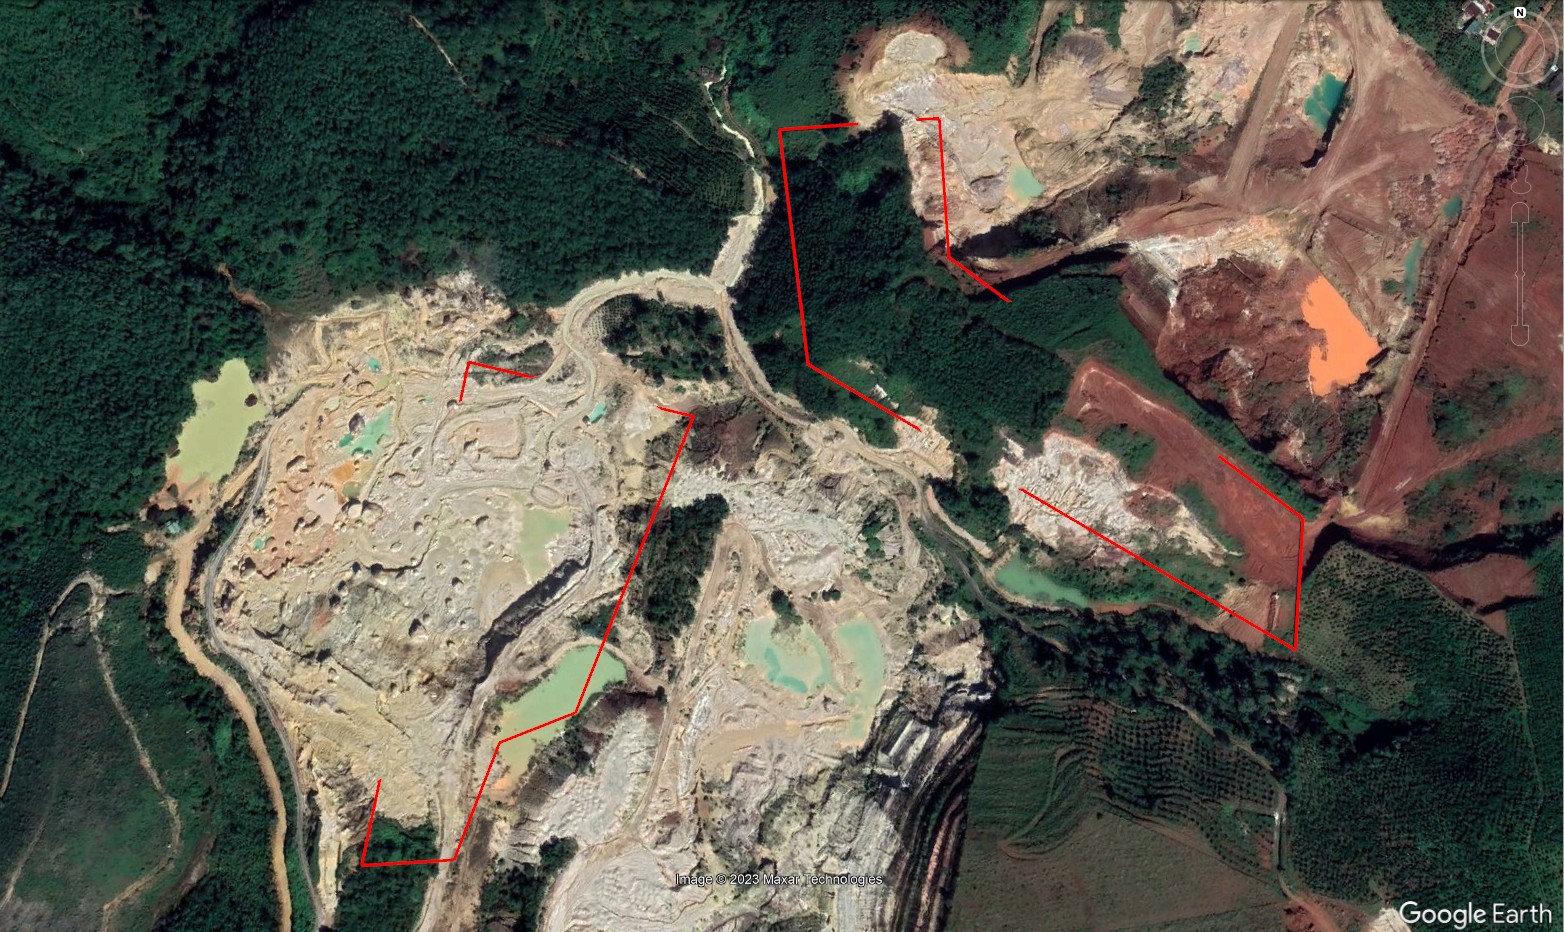 Khu vực mỏ đã hết thời hạn từ năm 2013 của Công ty cổ phần khoáng sản và vật liệu xây dựng Lâm Đồng. Tuy nhiên, đến nay Công ty vẫn chưa thể thực hiện đóng cửa mỏ theo quy định